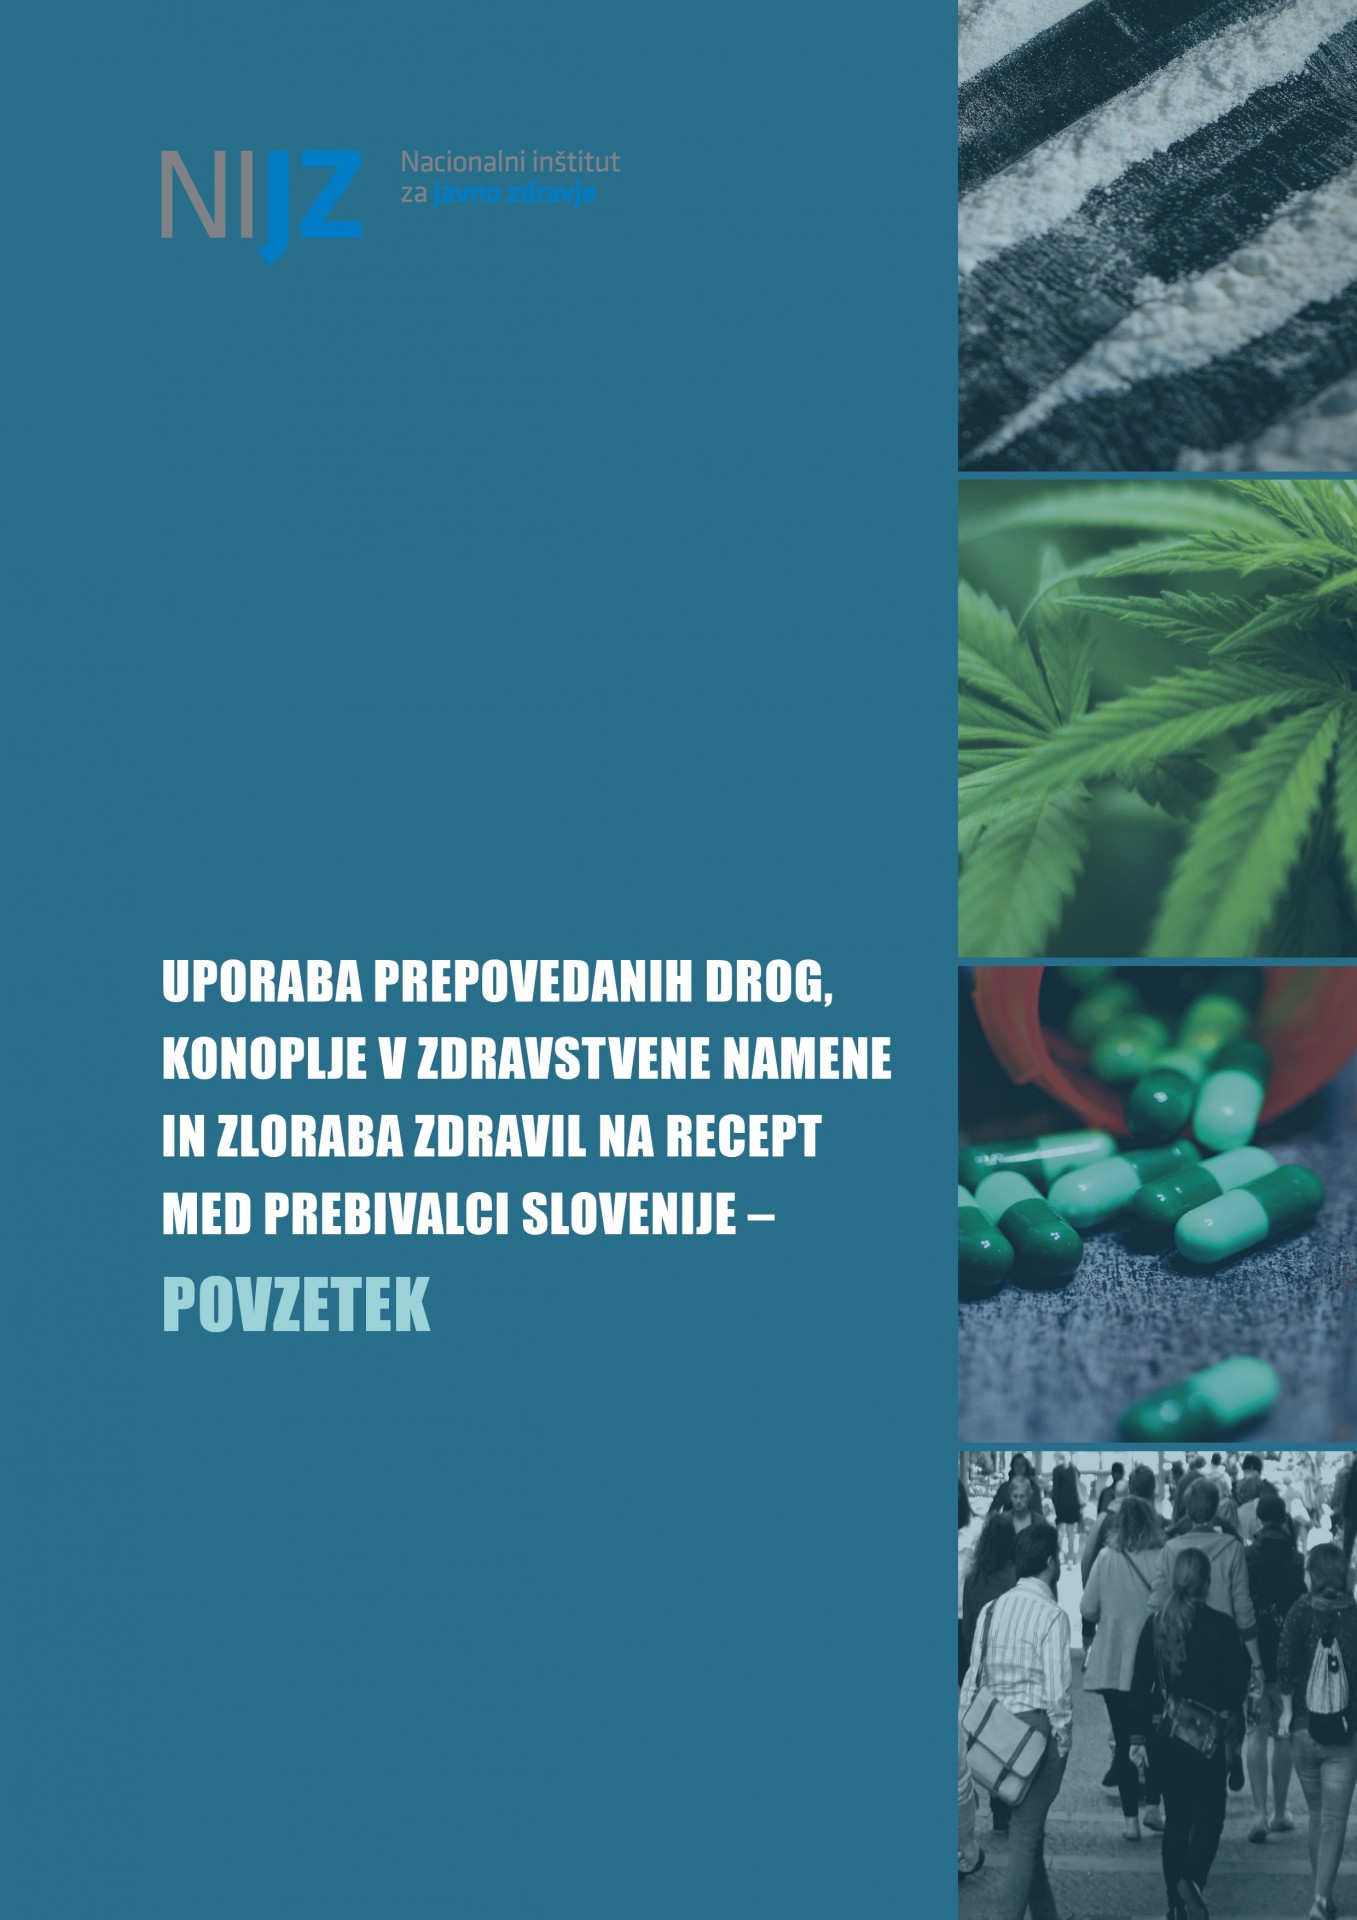 Uporaba prepovedanih drog, konoplje v zdravstvene namene in zloraba zdravil na recept med prebivalci Slovenije – povzetek